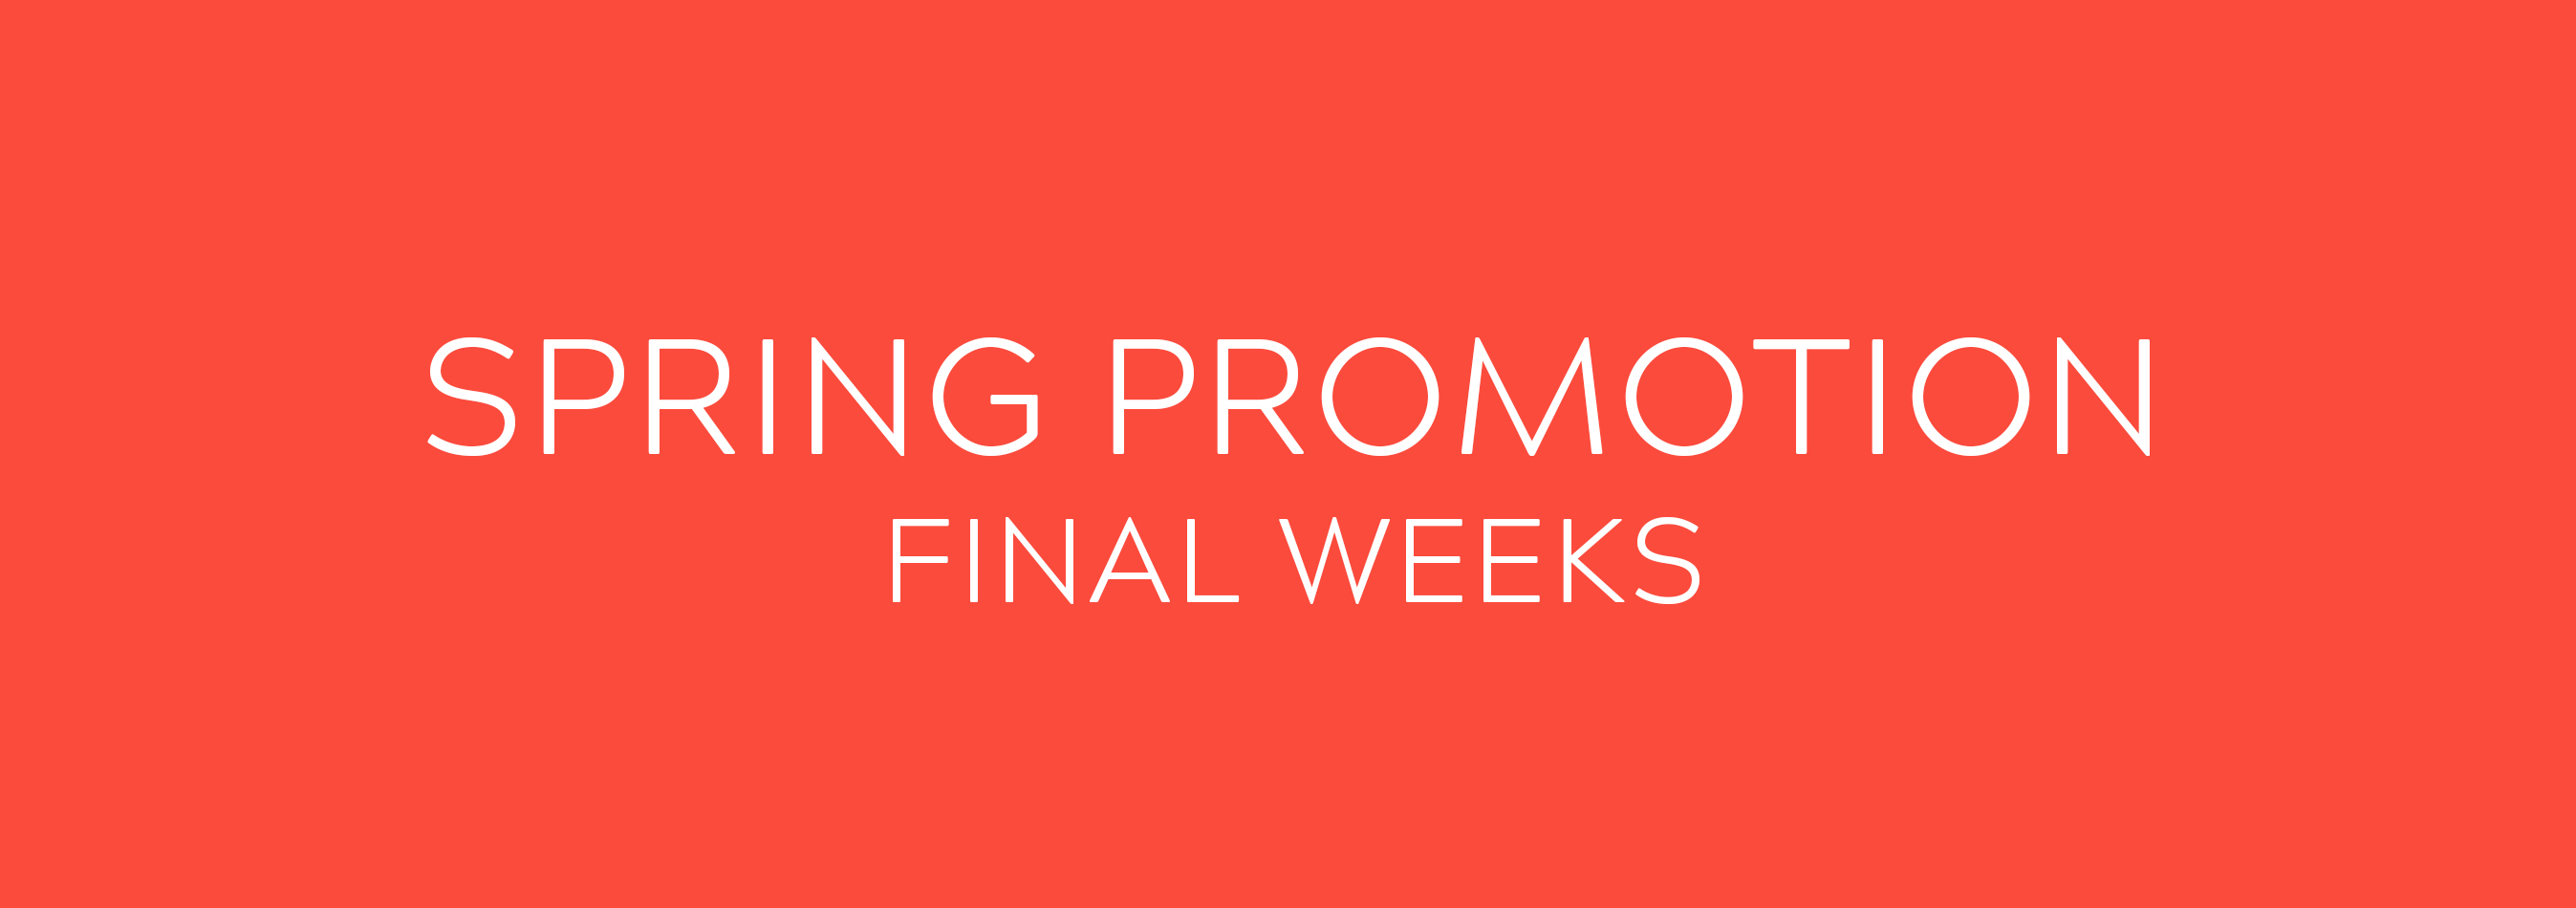 Spring Promotion - Final Weeks